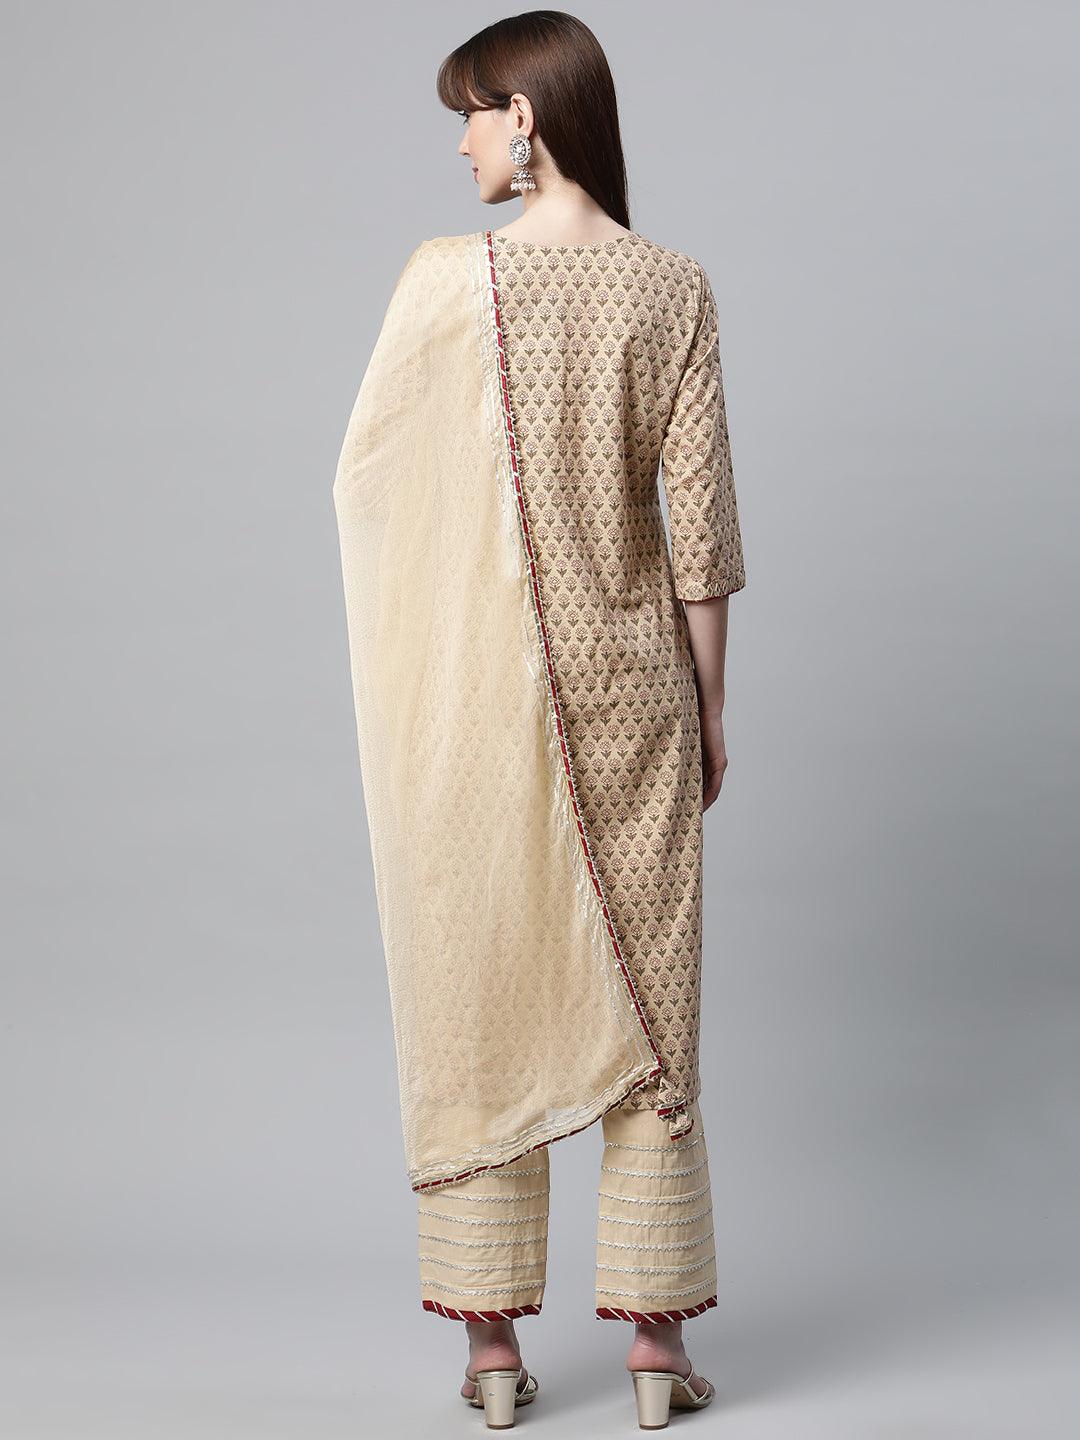 Divena Beige Color Cotton Straight Kurta Pant Set with Dupatta - divena world